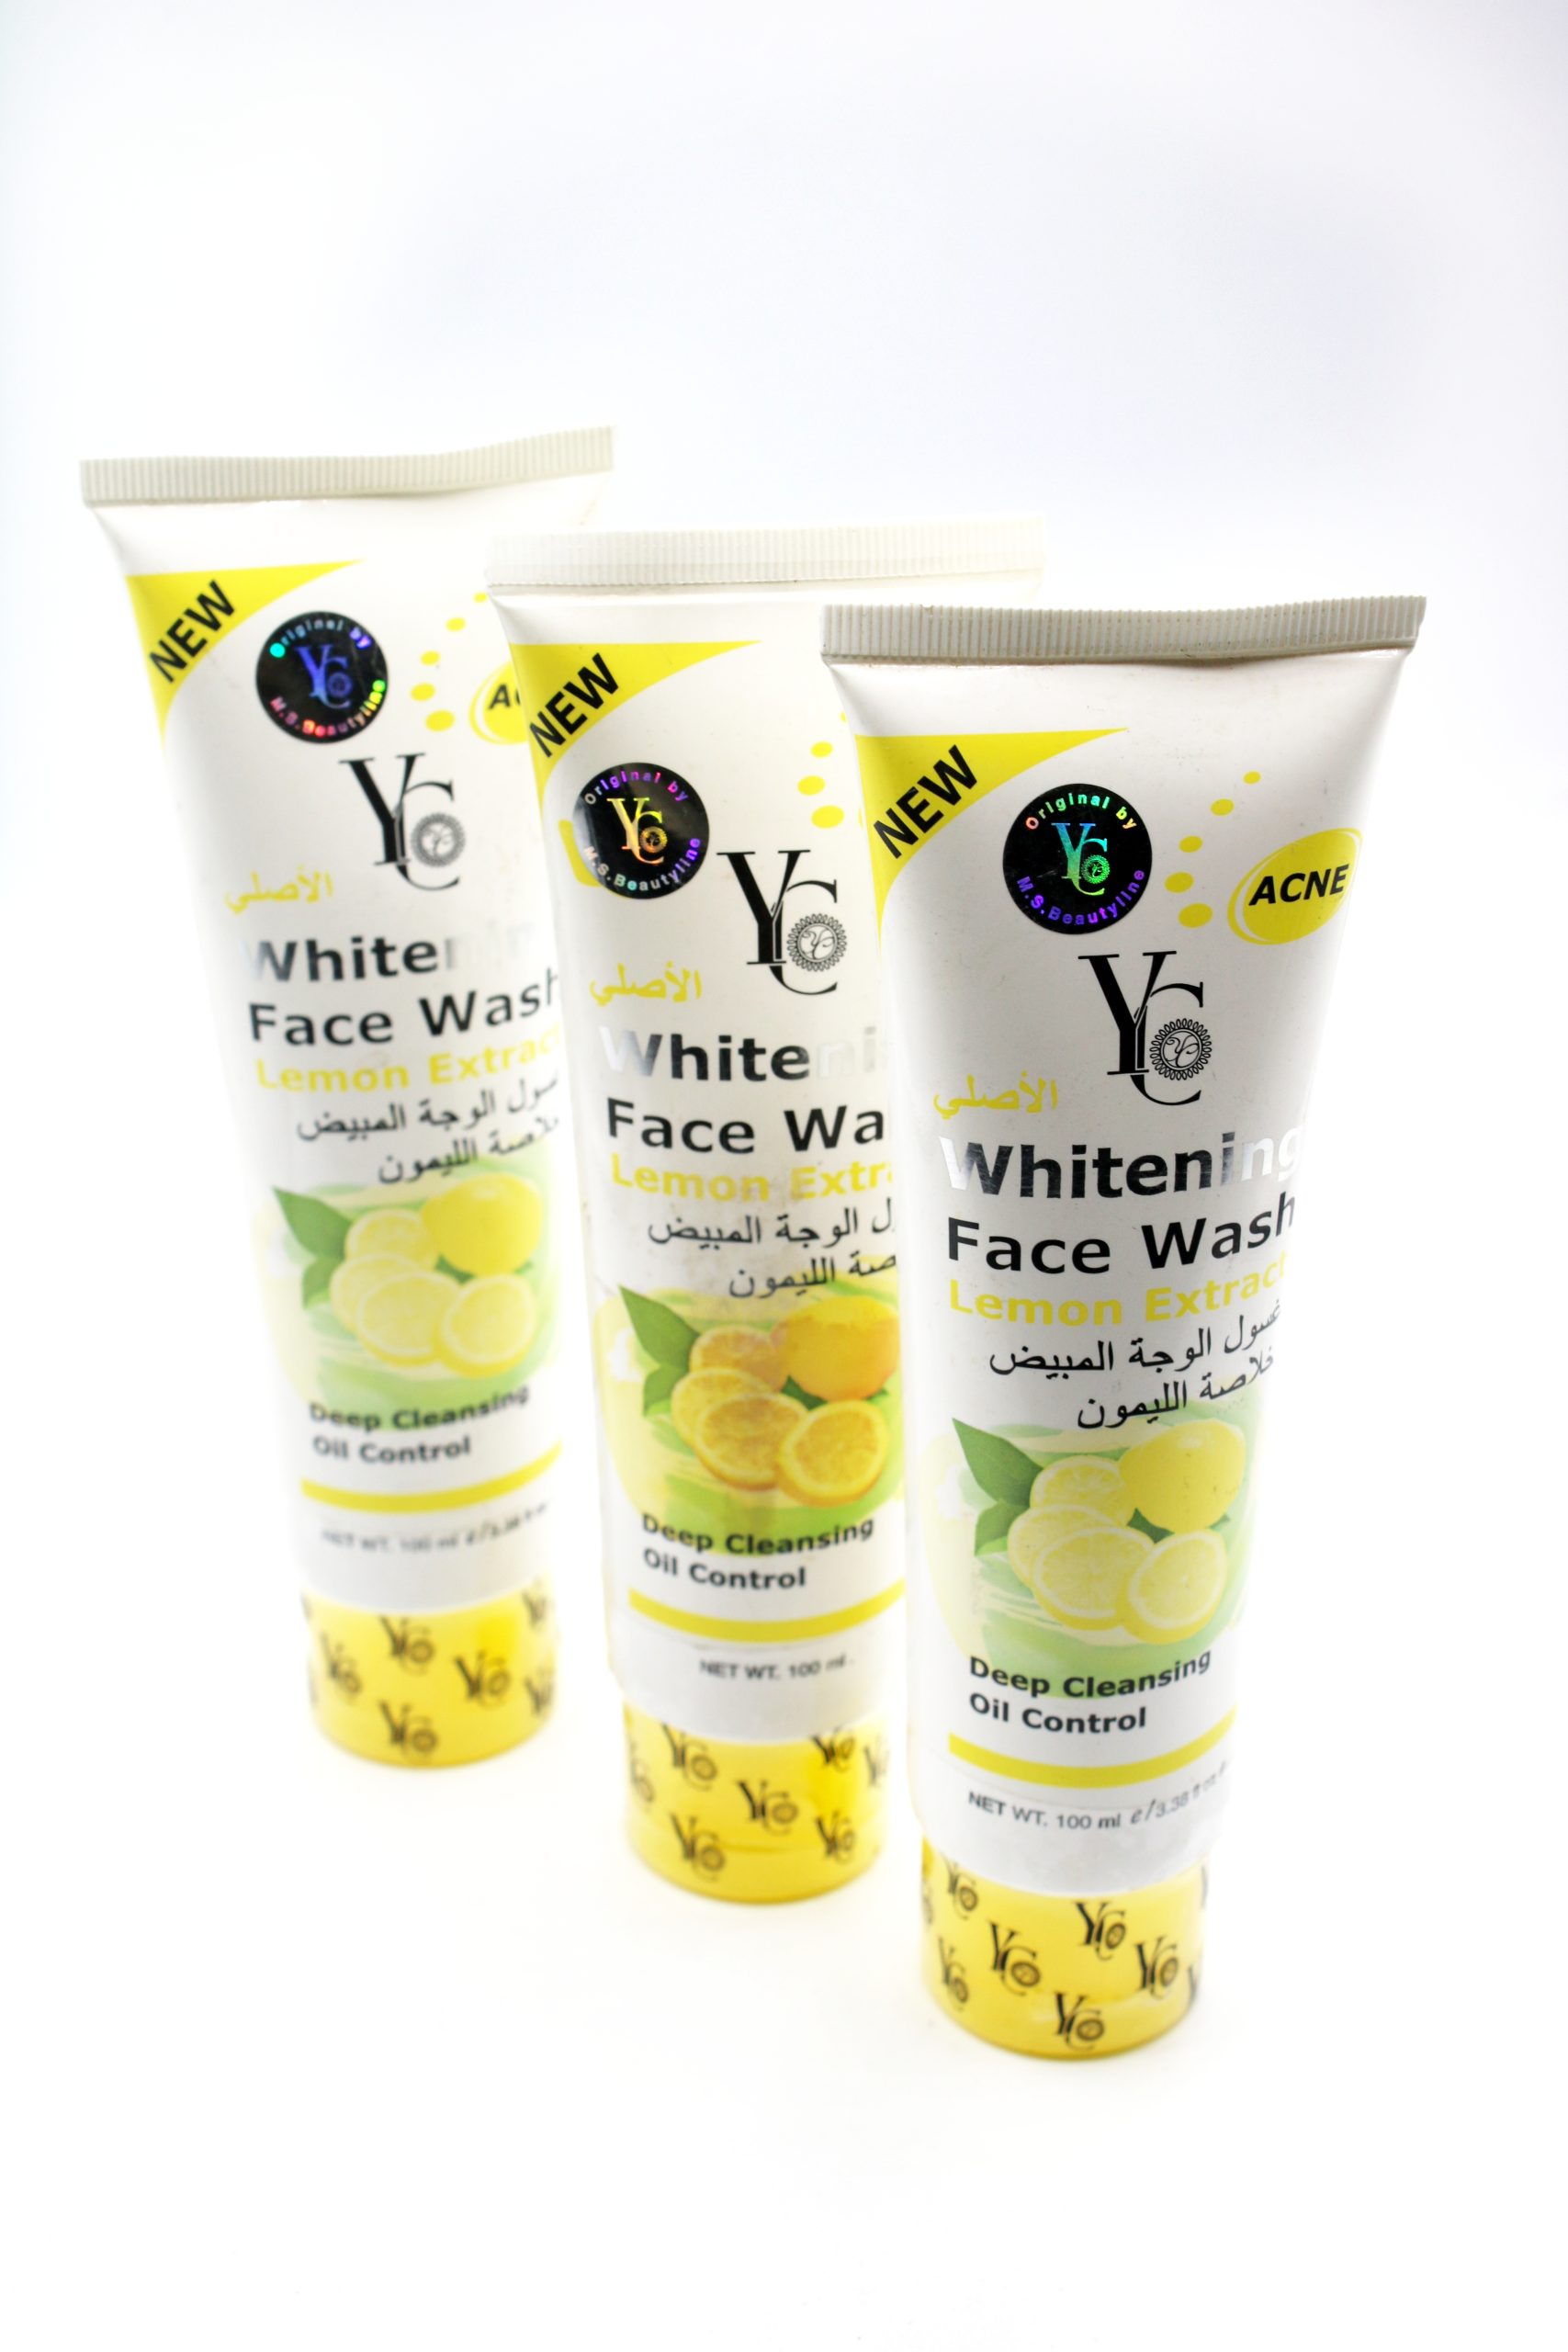 yc whitening face wash lemon extract